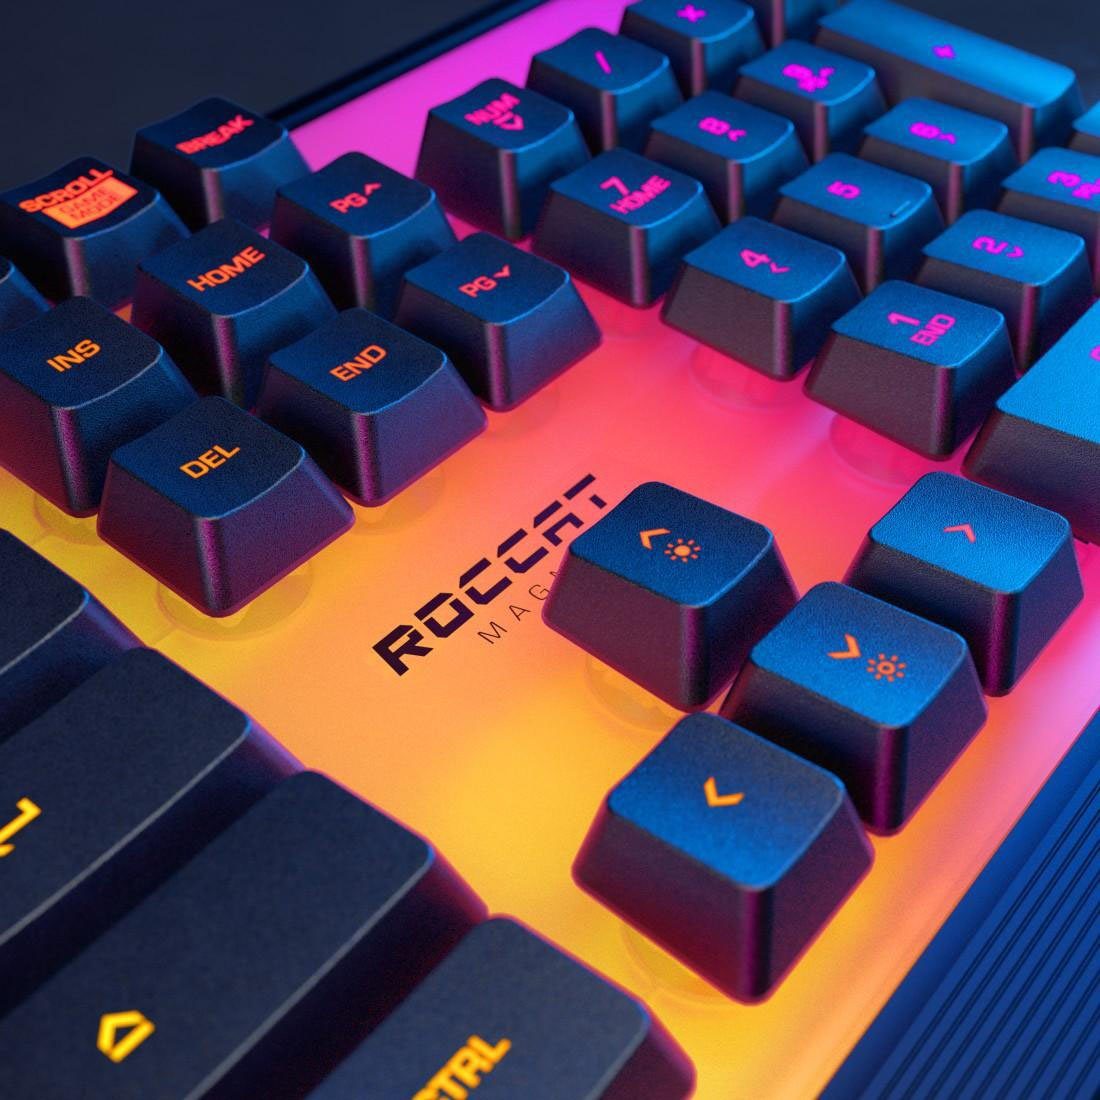 Magma ROCCAT Gaming-Tastatur